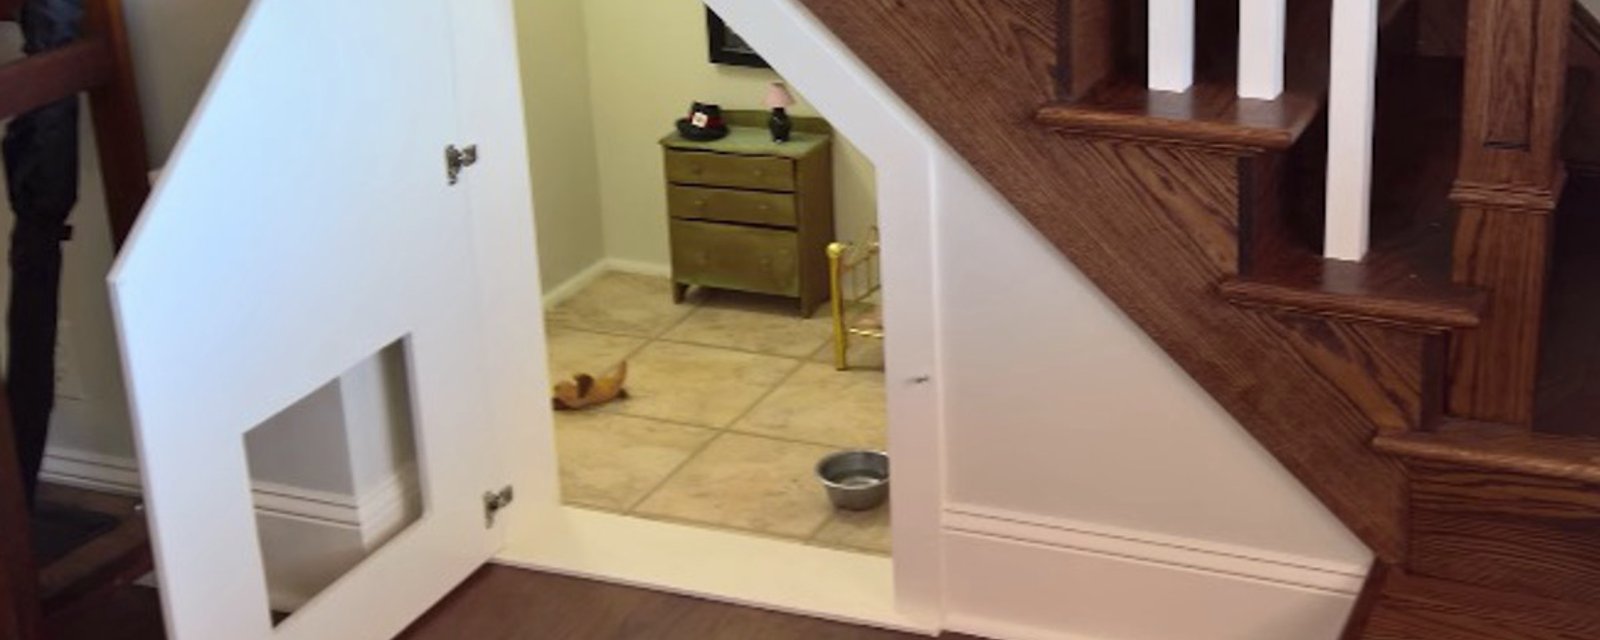 Ce chien a sa propre petite chambre à coucher sous l'escalier